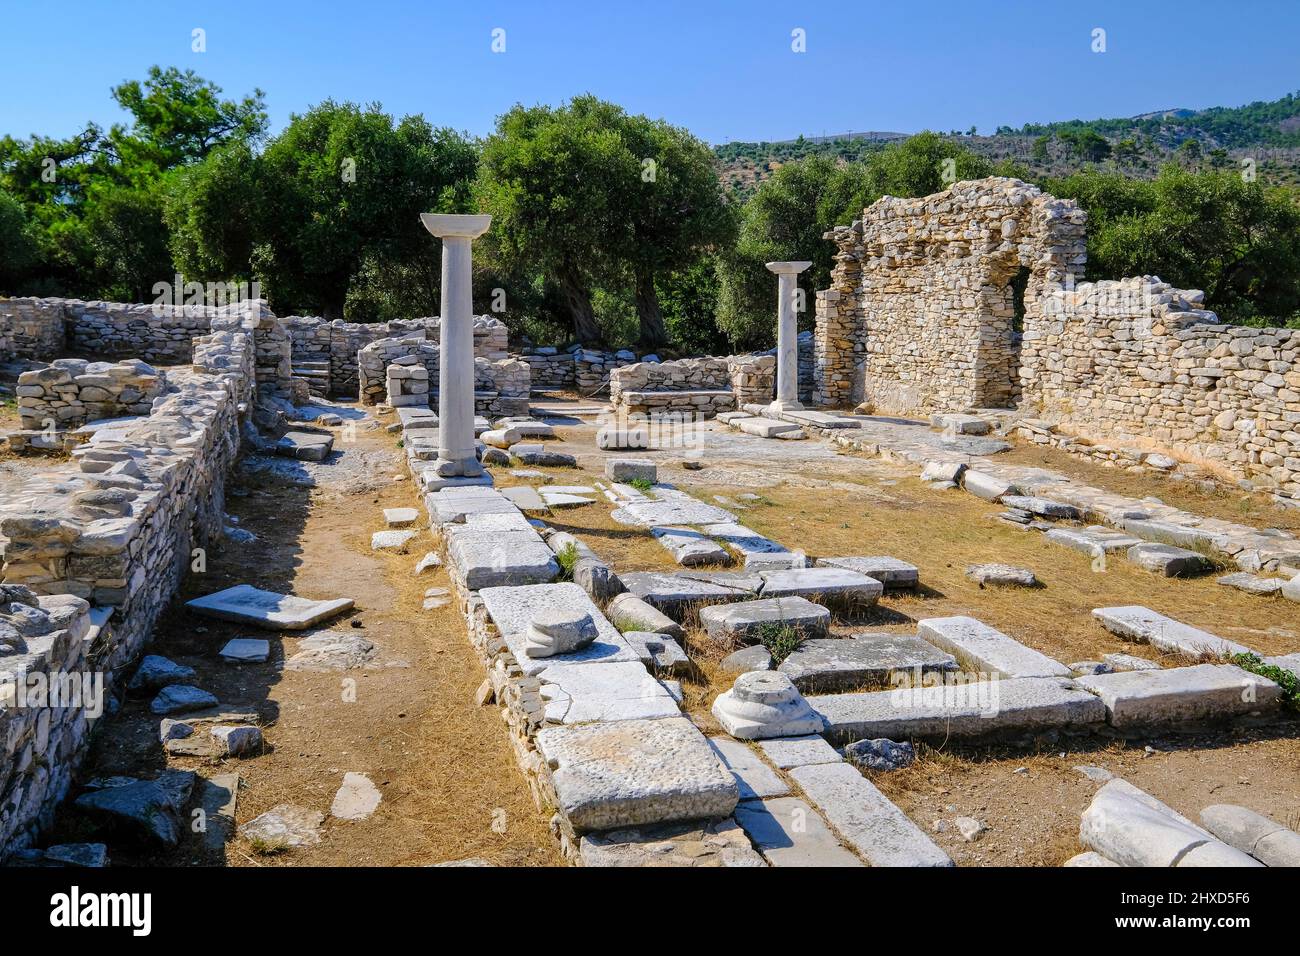 Aliki, Thassos, Griechenland - die Marmorhalbinsel Aliki mit ihren antiken Ruinen und Badebuchten ist ein beliebtes Urlaubsziel. Thassos gehört zu Ostmakedonien und Thrakien, ebenso zu Ostmakedonien und Thrakien. Stockfoto